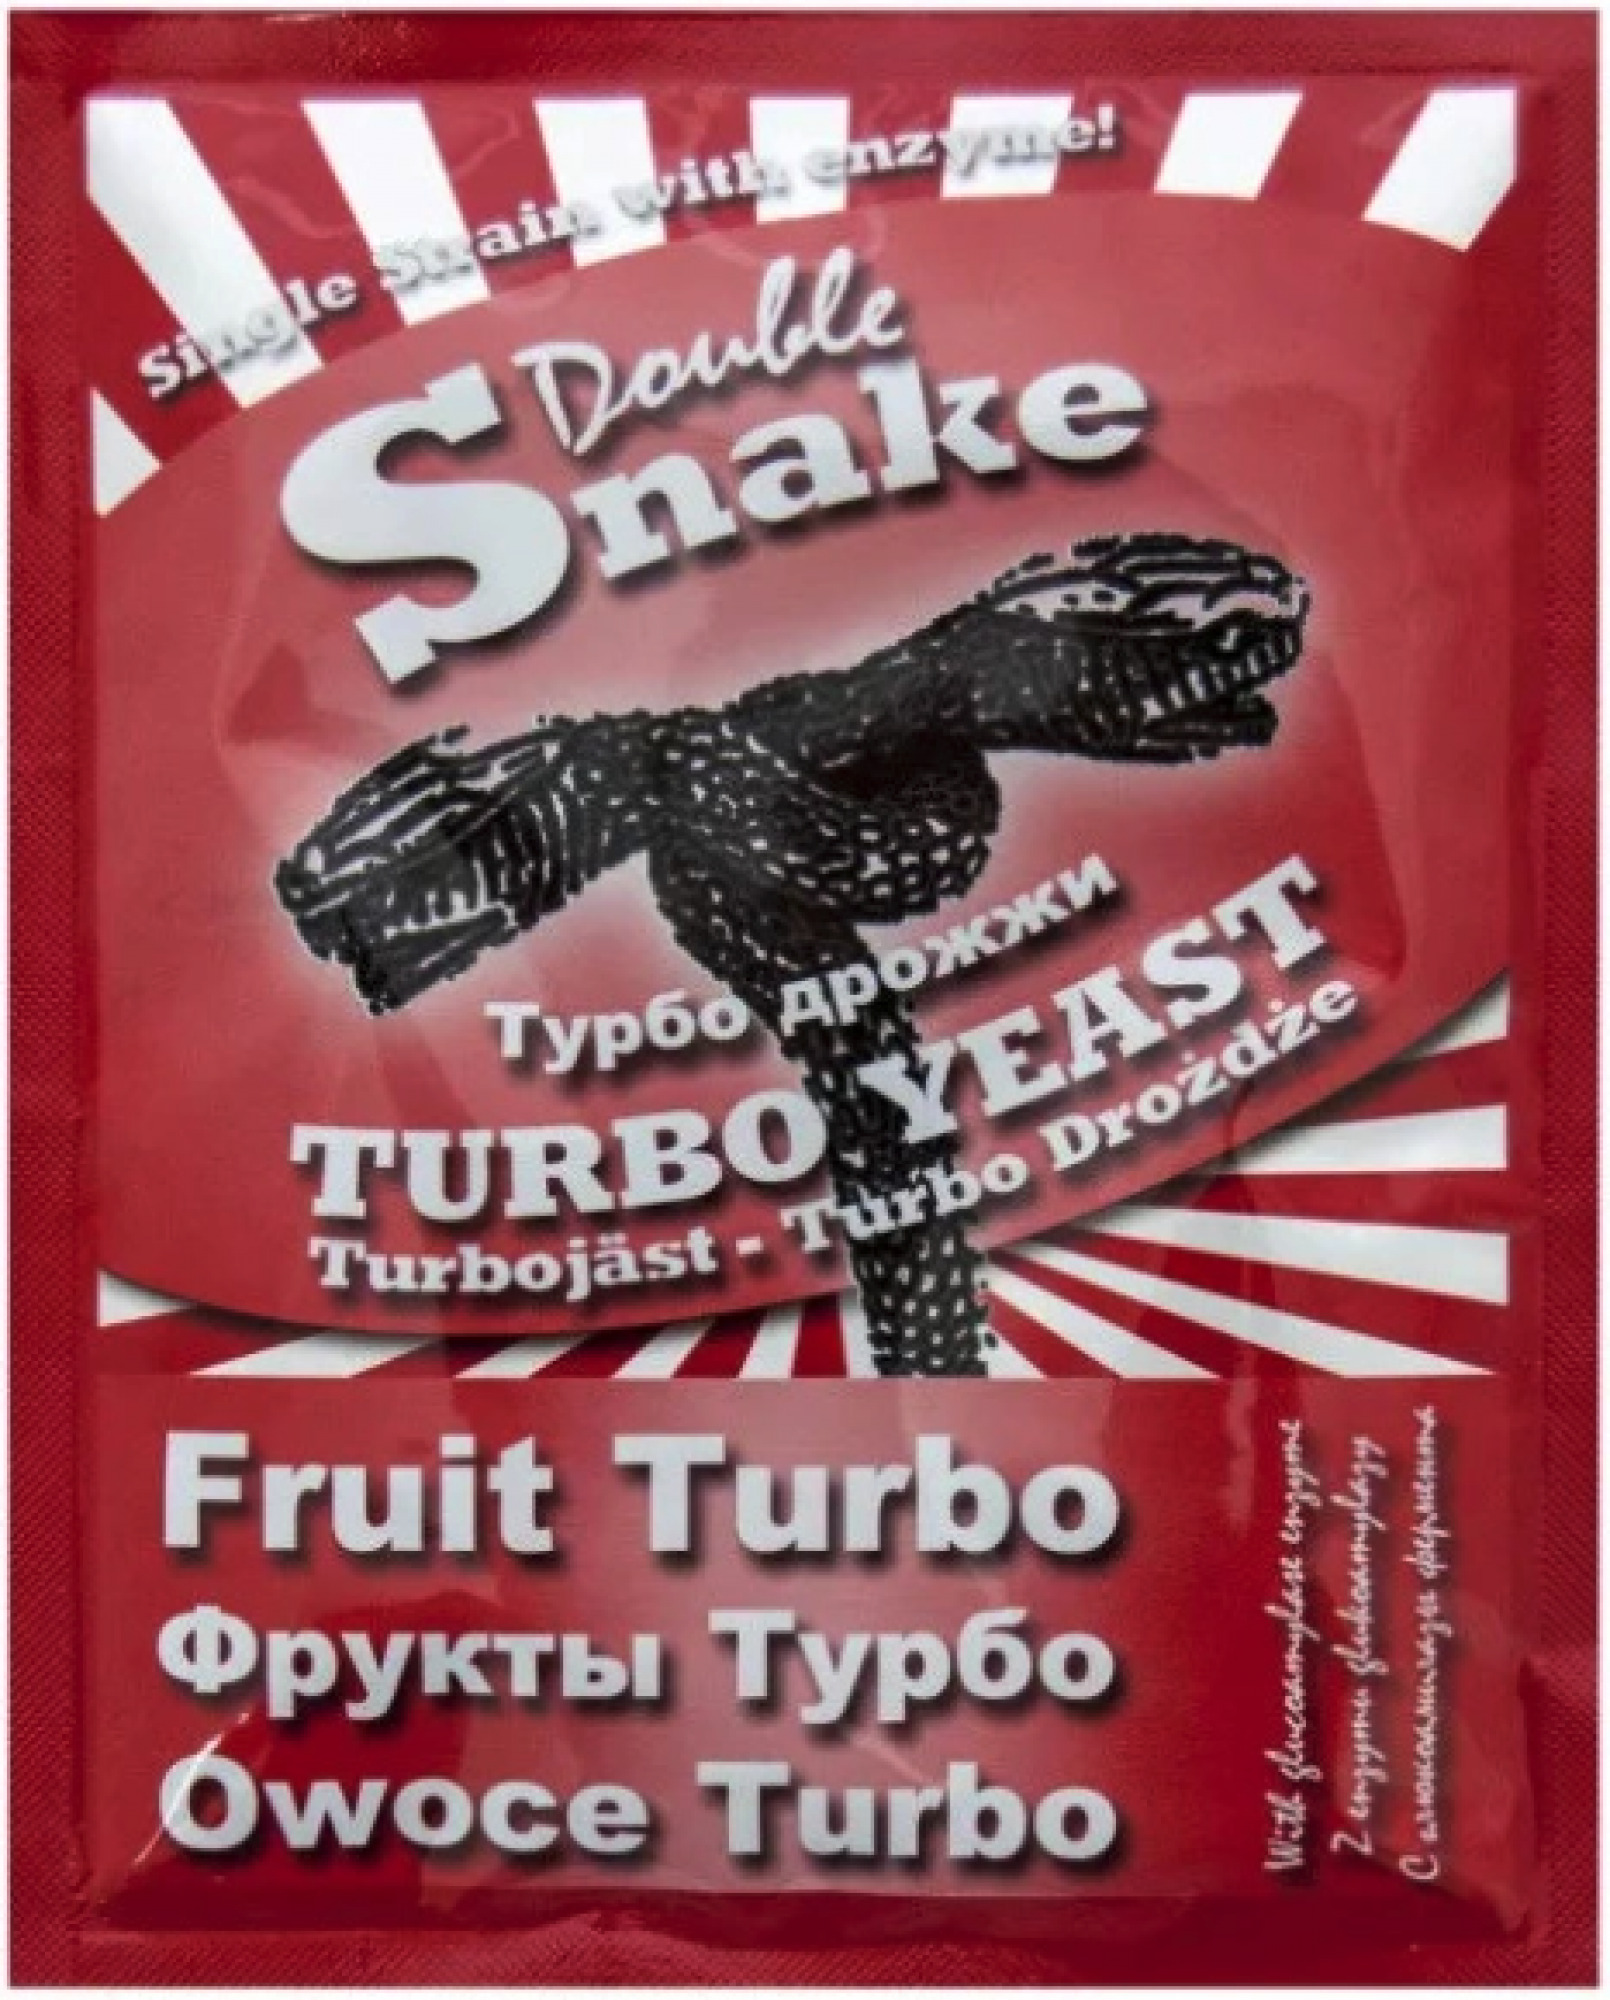 Дрожжи снейк. Турбо дрожжи Puriferm Fruit. Дрожжи Double Snake Fruit Turbo. Турбо дрожжи DOUBLESNAKE Fruit Turbo (49г). Турбо дрожжи "Leyka Fruit" 68гр.